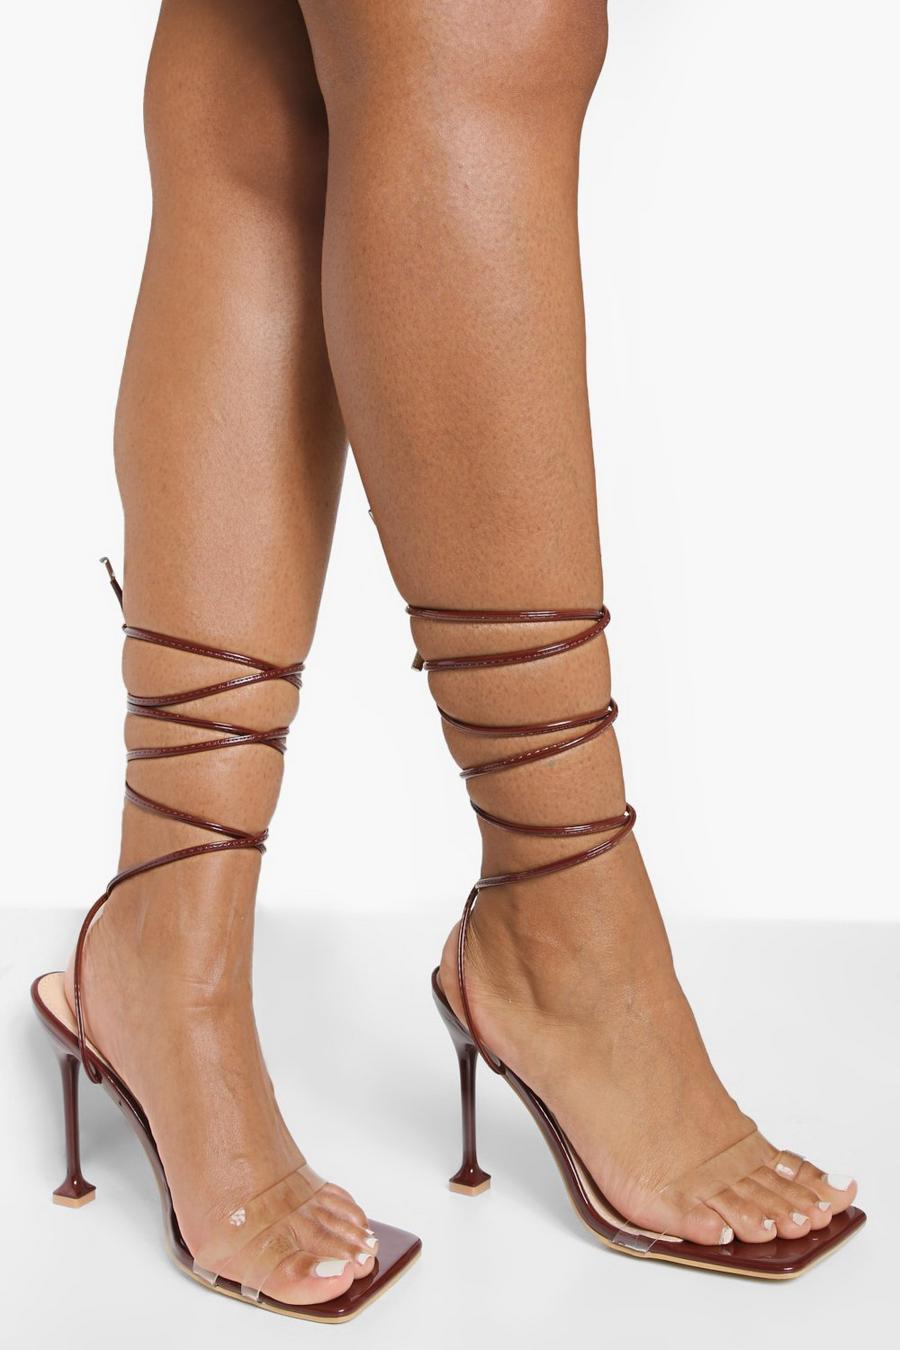 Sandales transparentes à talon aiguille et lacets, Chocolate brown